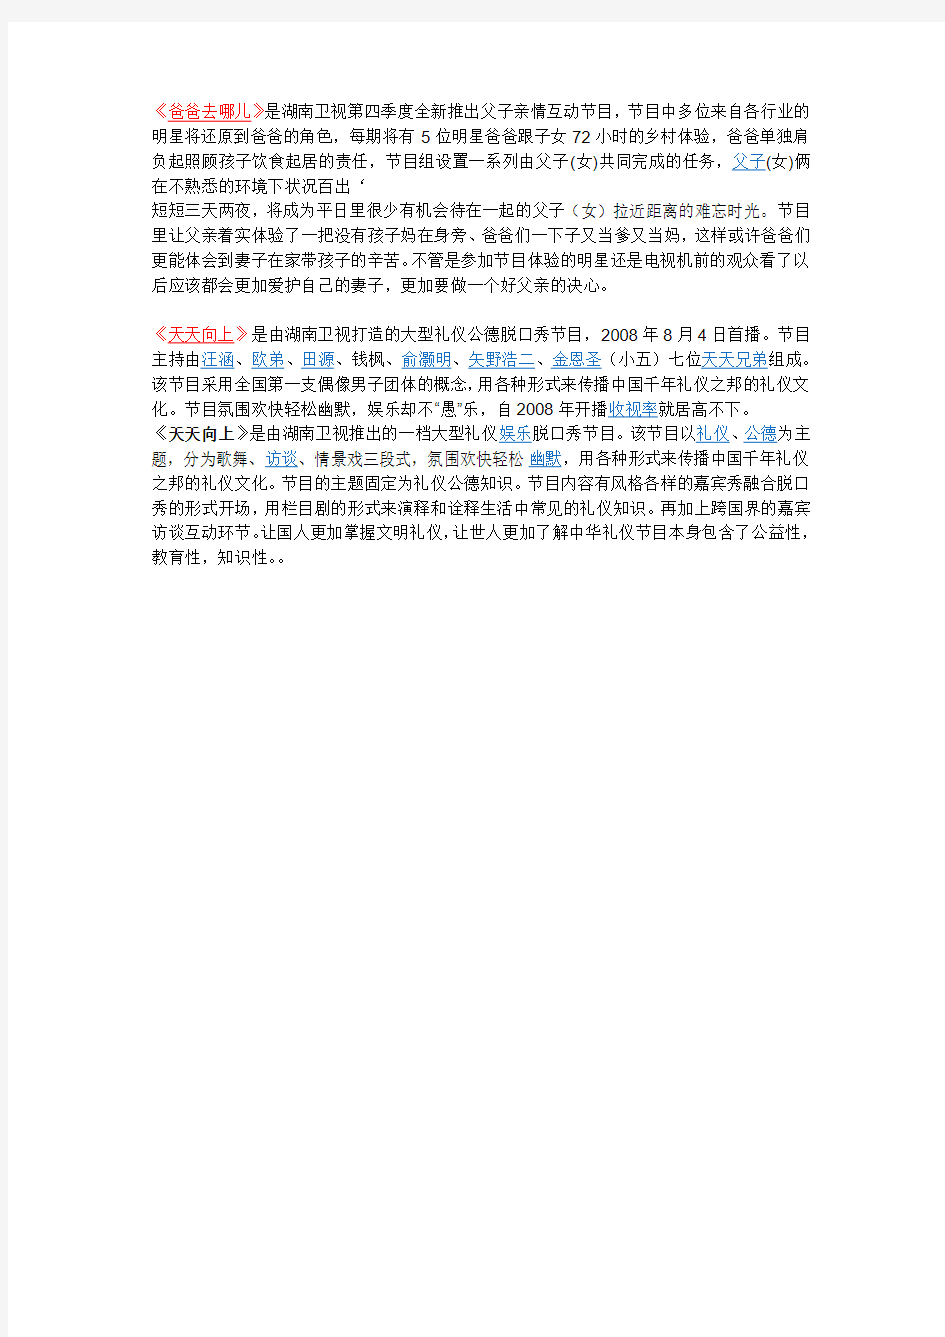 中国湖南电视台是湖南省最权威的电视机构